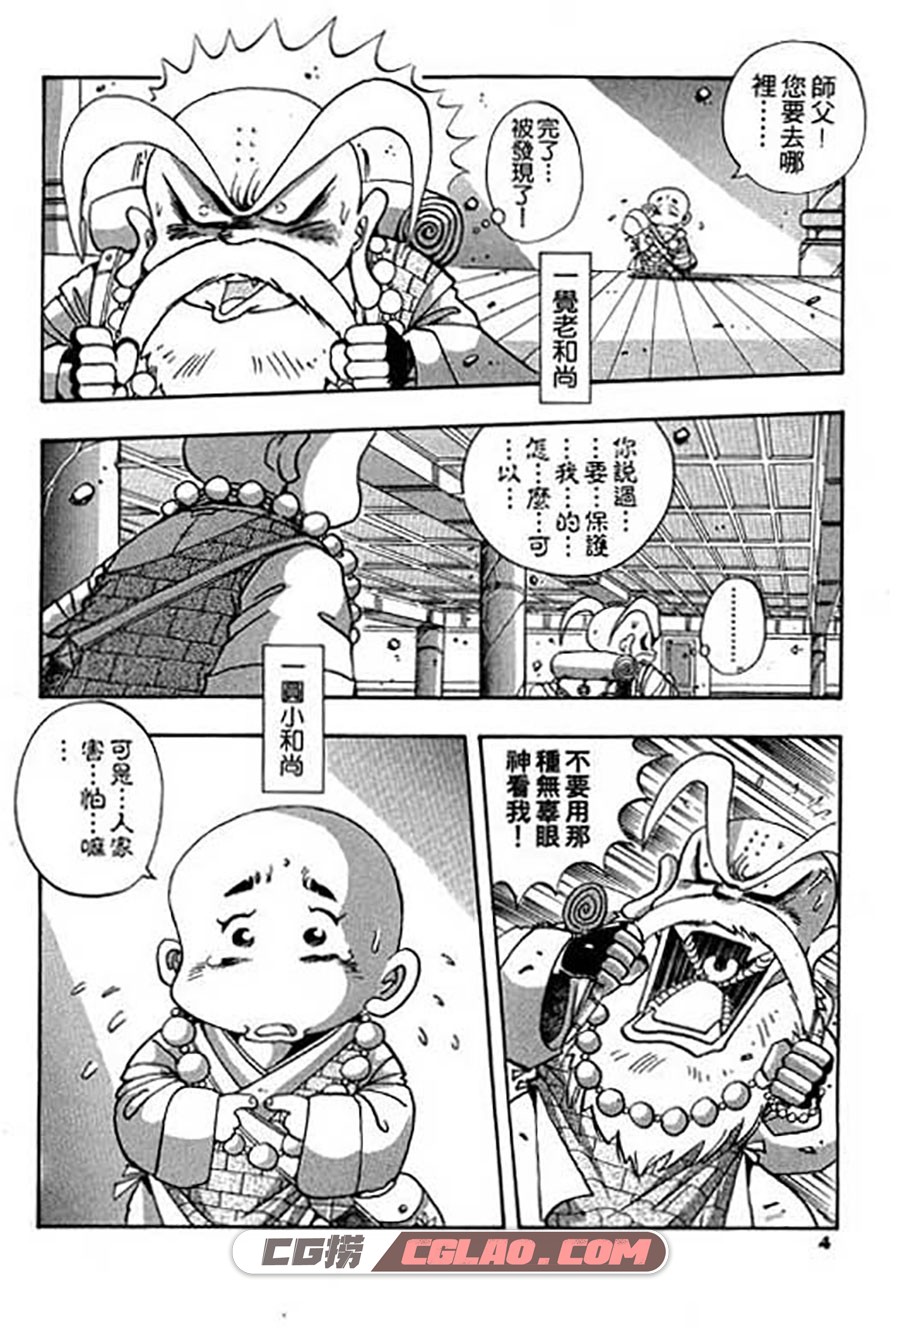 小和尚 赖有贤 1-28册 漫画全集下载 百度网盘,001_004.jpg